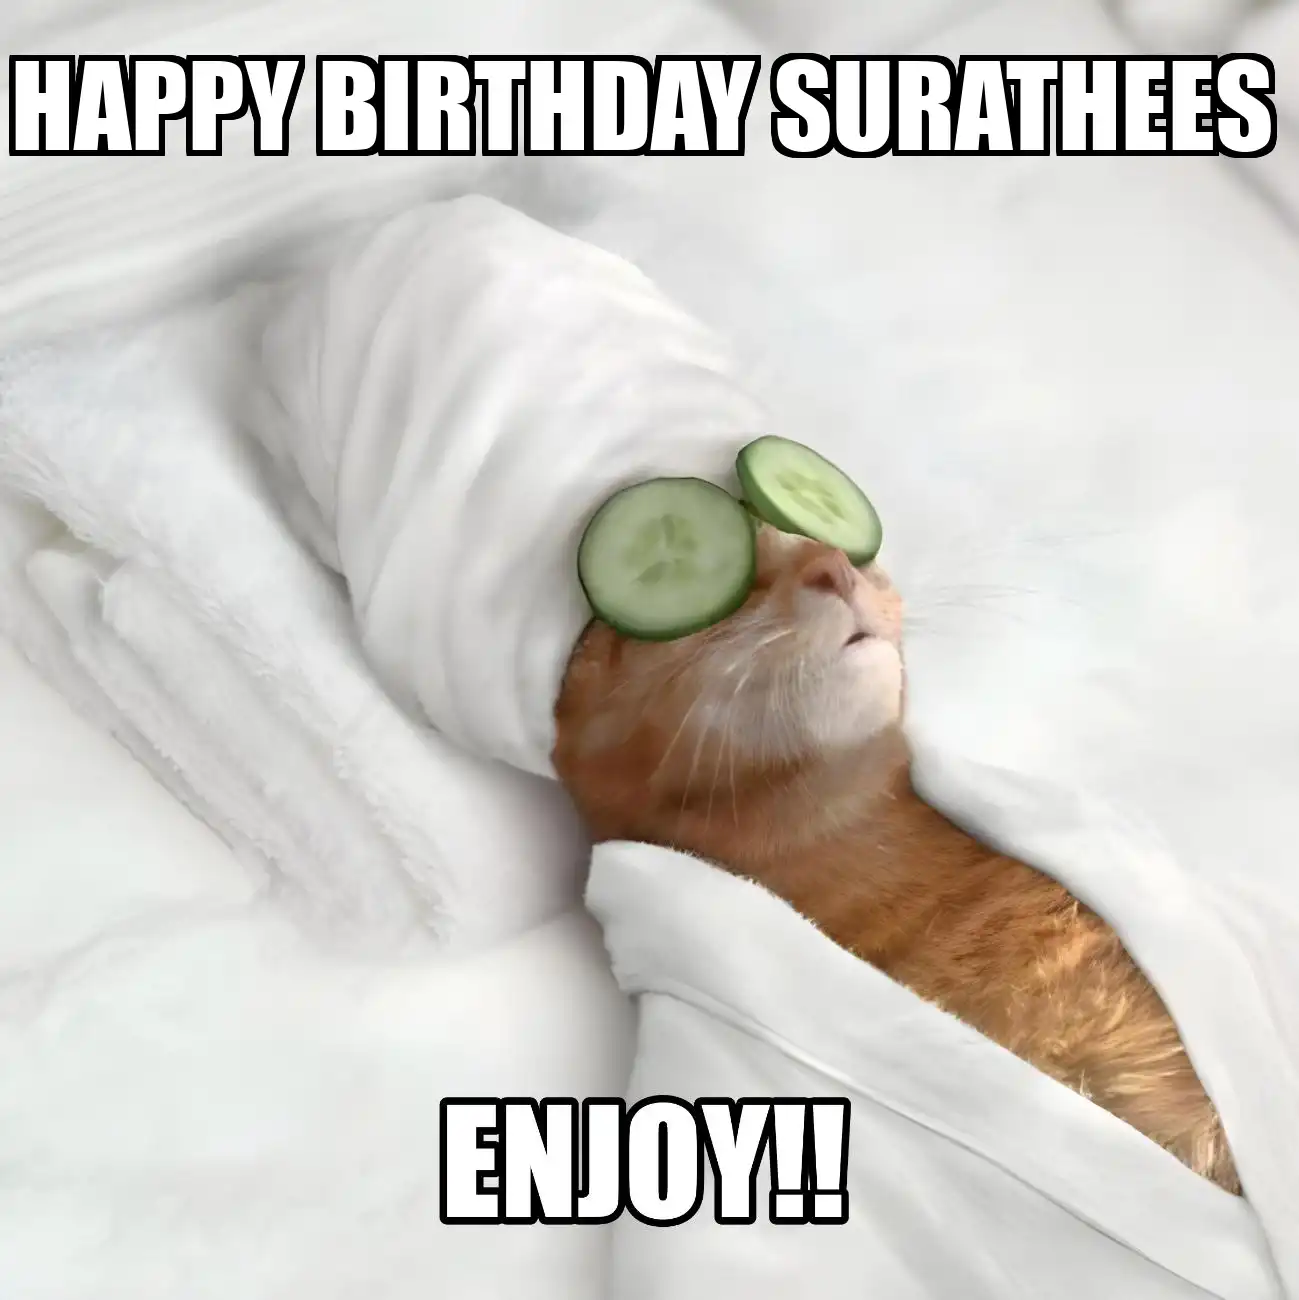 Happy Birthday Surathees Enjoy Cat Meme